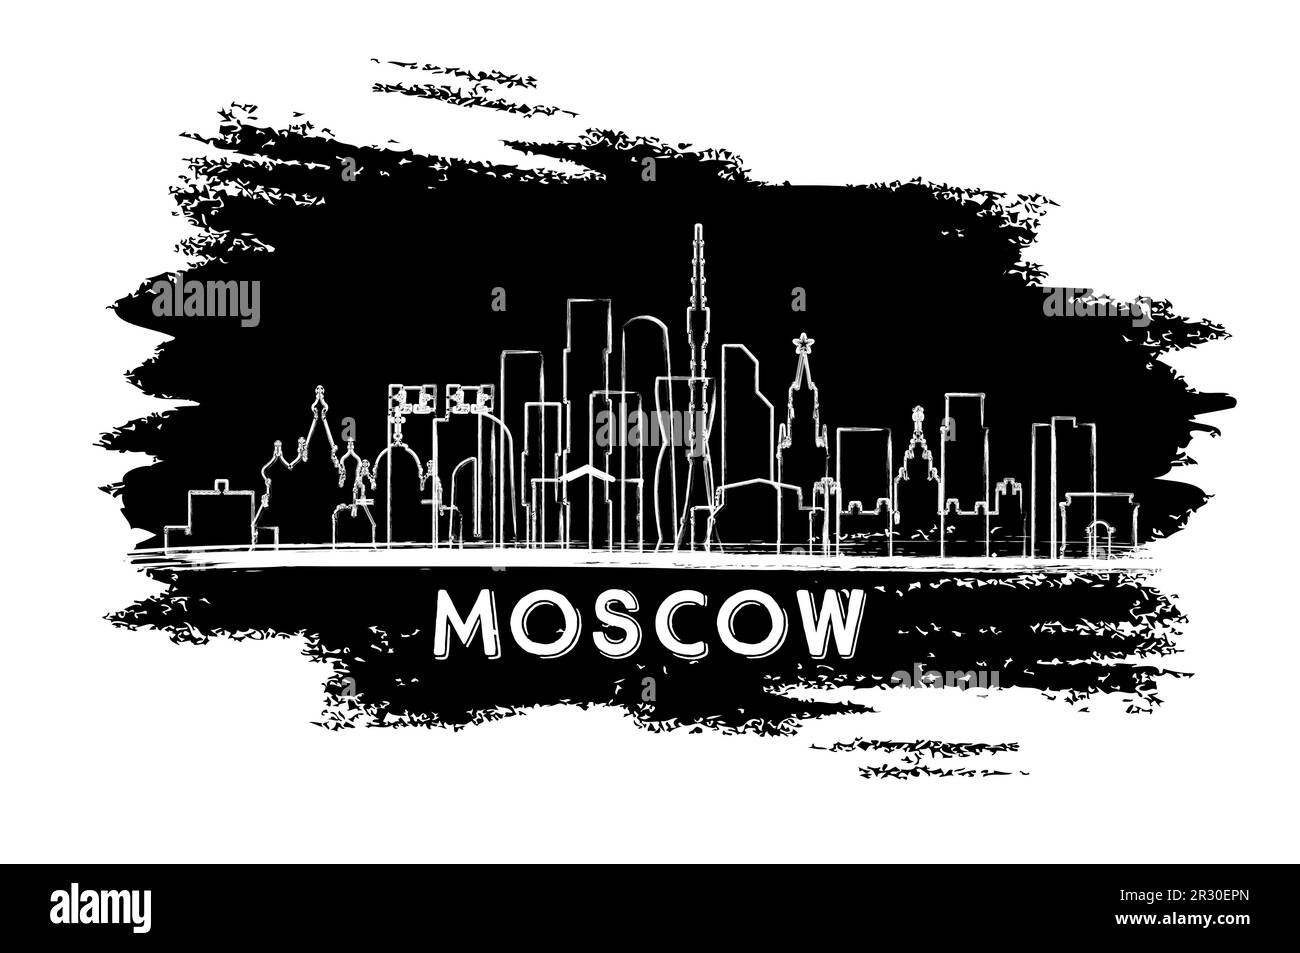 Silhouette Der Skyline Von Moskau, Russland. Handgezeichnete Skizze. Business Travel and Tourism Concept mit historischer Architektur. Vektordarstellung. Stock Vektor